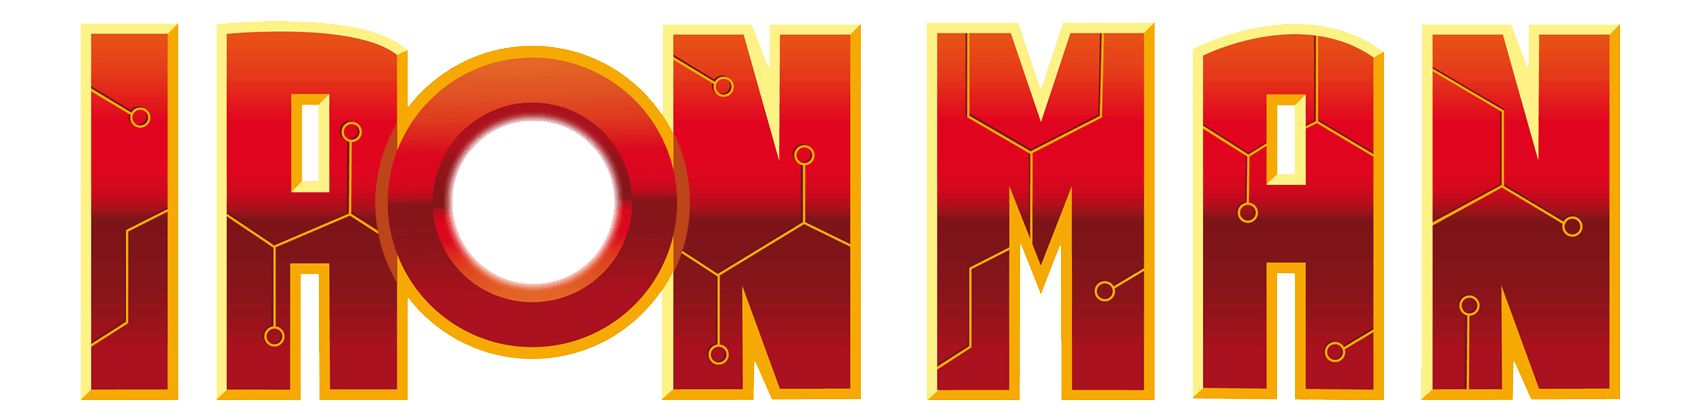 Iron Man Logo - Ironman PNG image free download